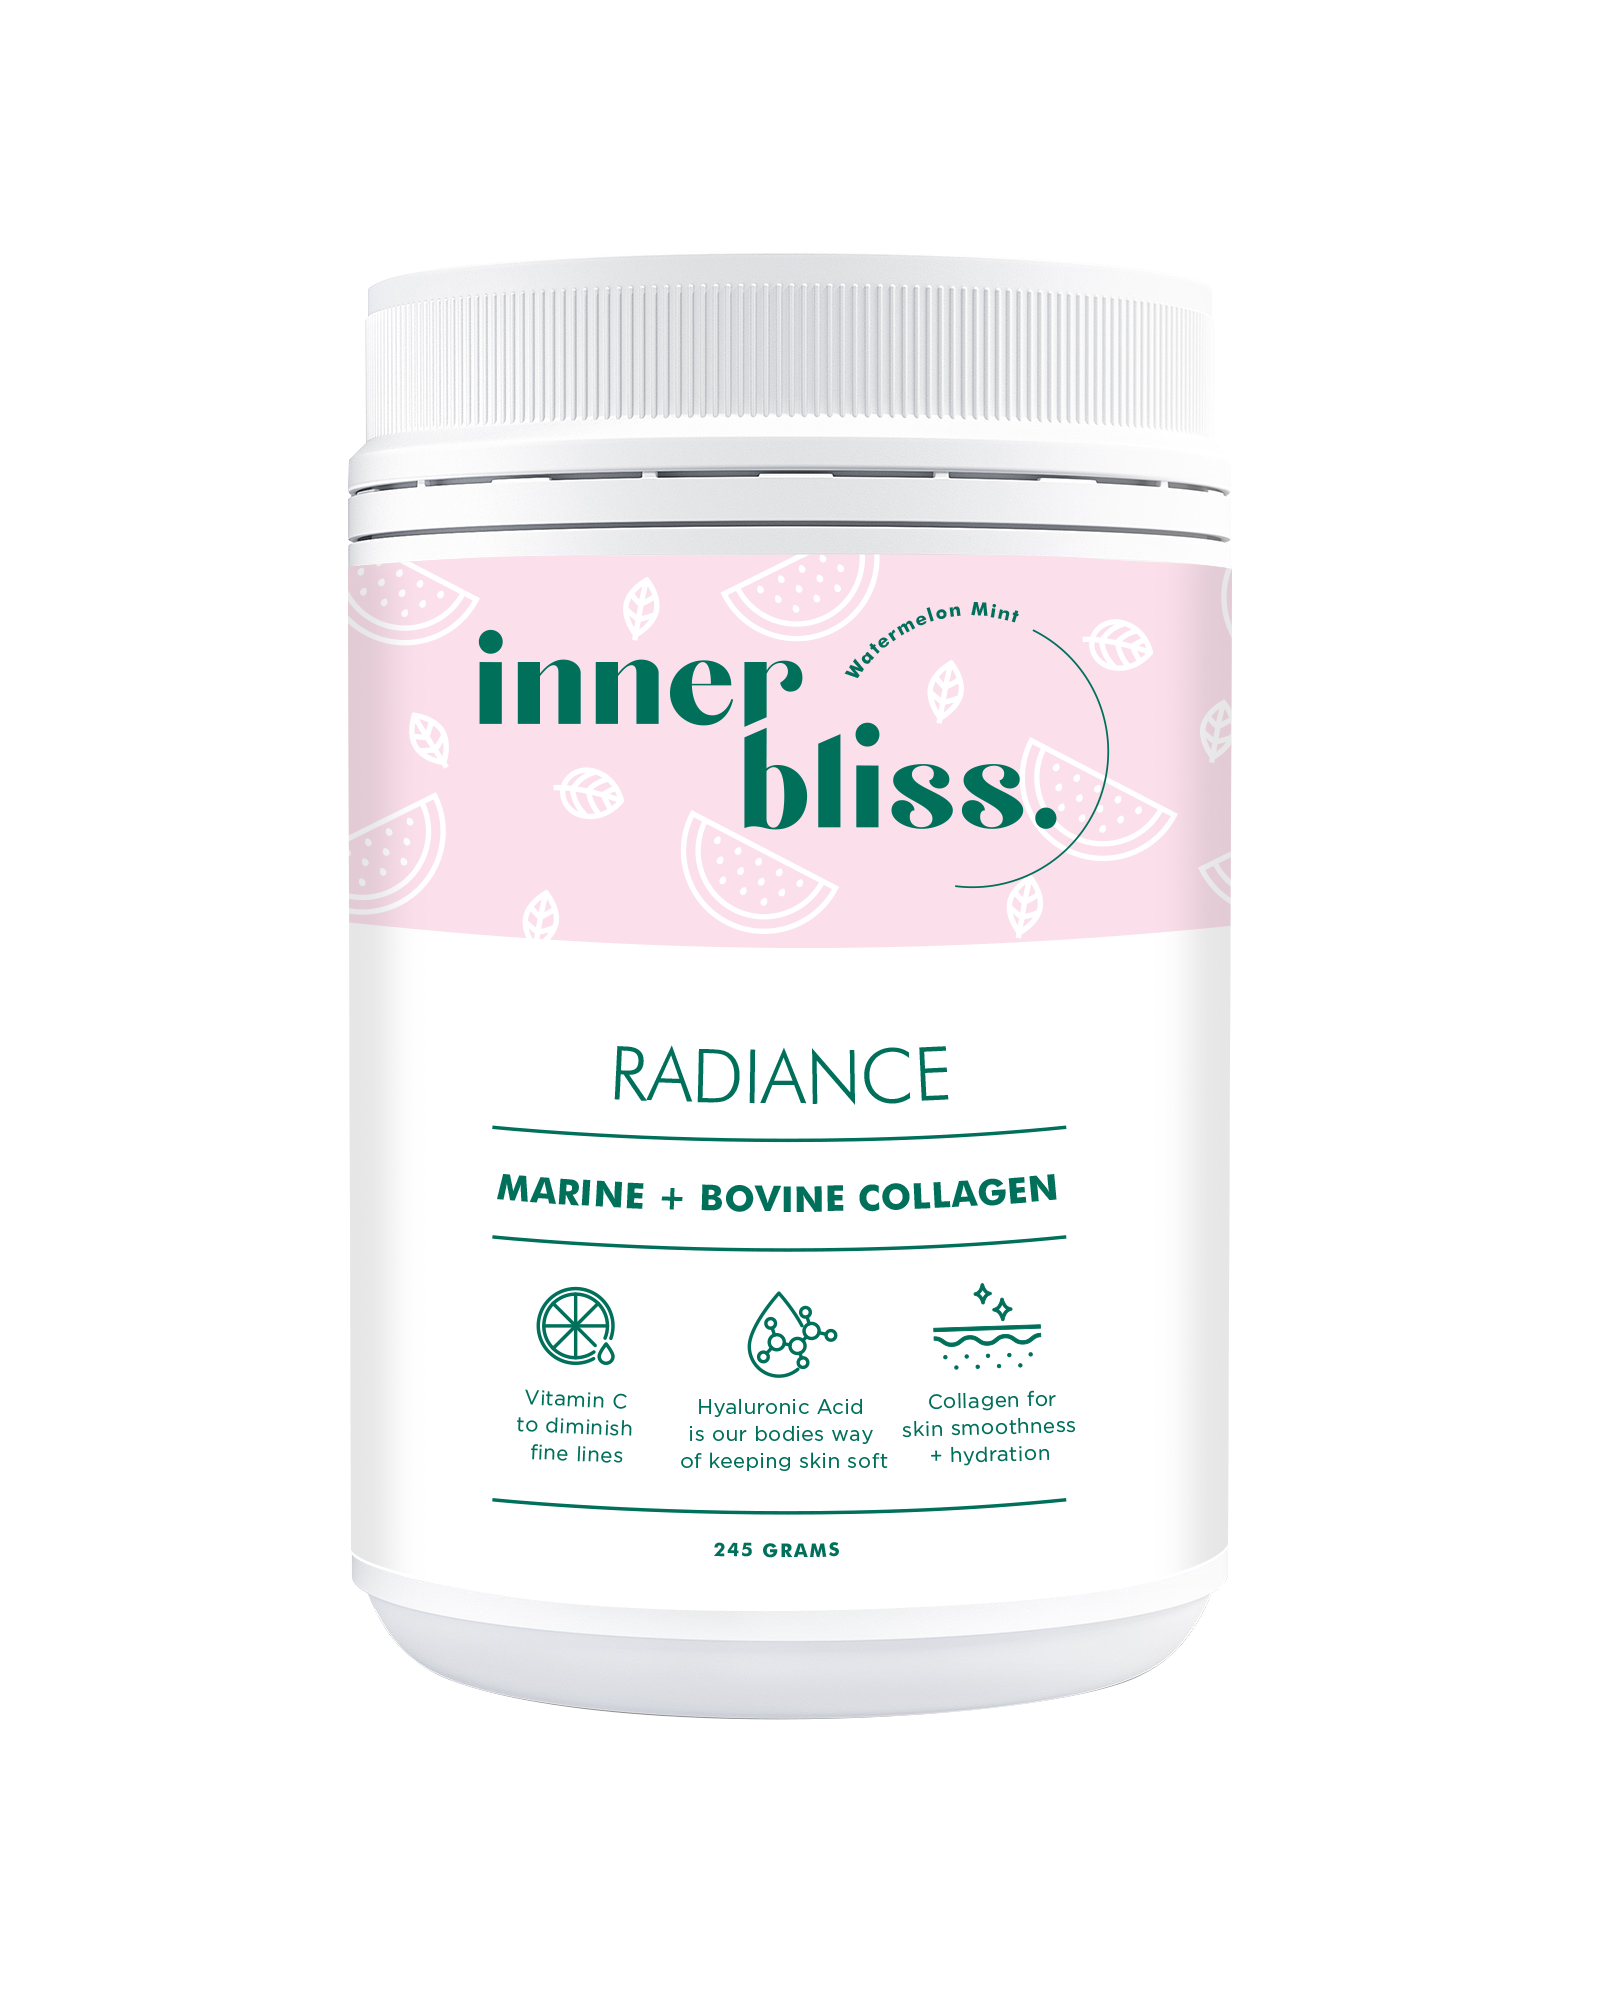 inner bliss radiance collagen hyaluronic acid + vitamin c watermelon mint 245g